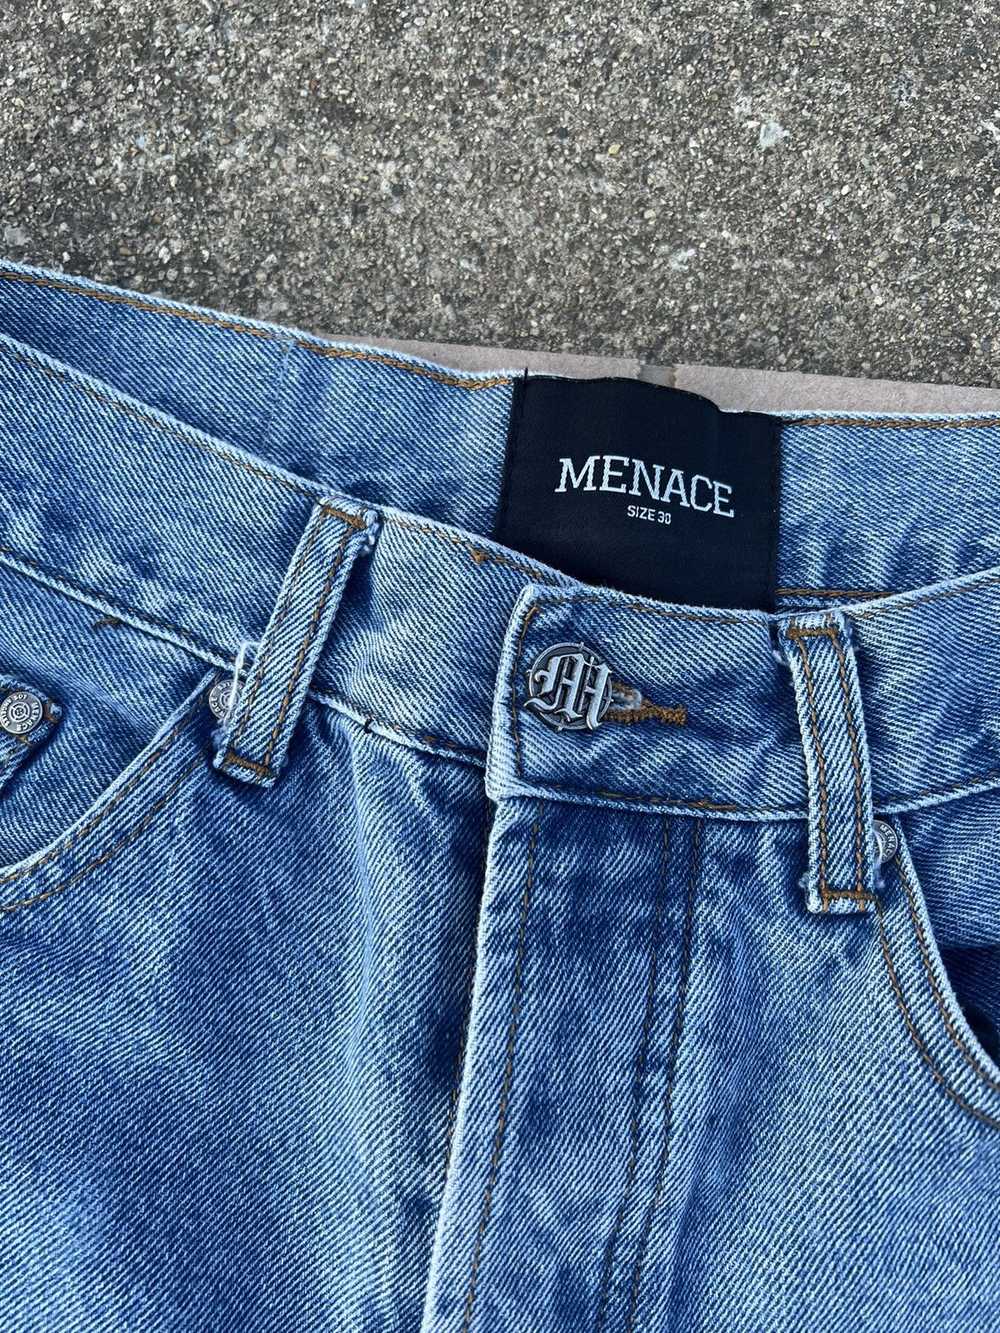 Menace Menace M Embossed Denim Jeans - image 4